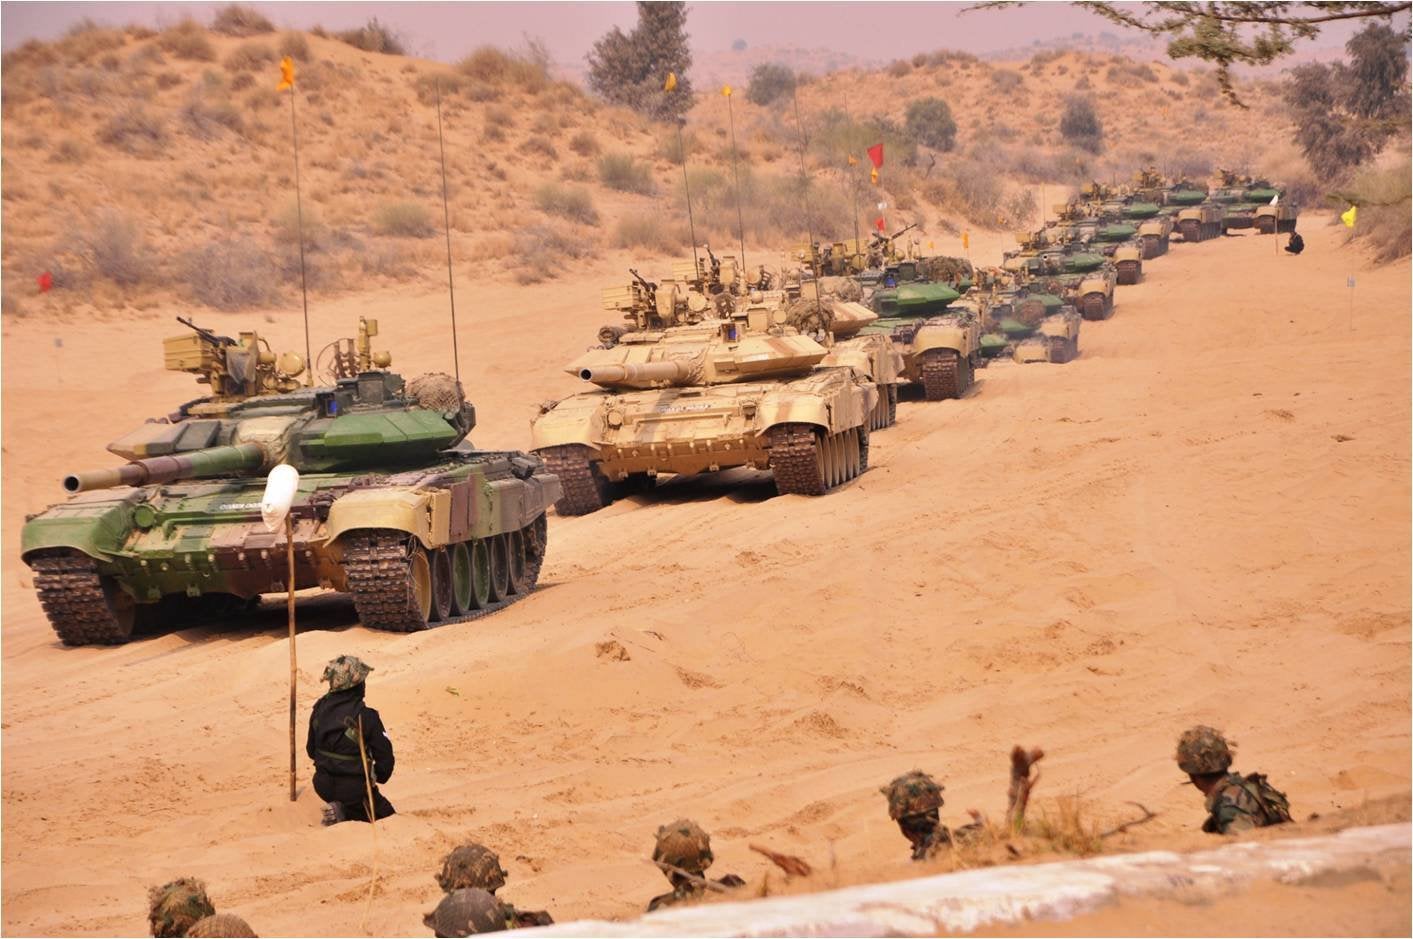 Quân đội Trung - Ấn từng có cuộc xung đột ở biên giới kéo dài suốt 9 năm (ảnh: India Today)